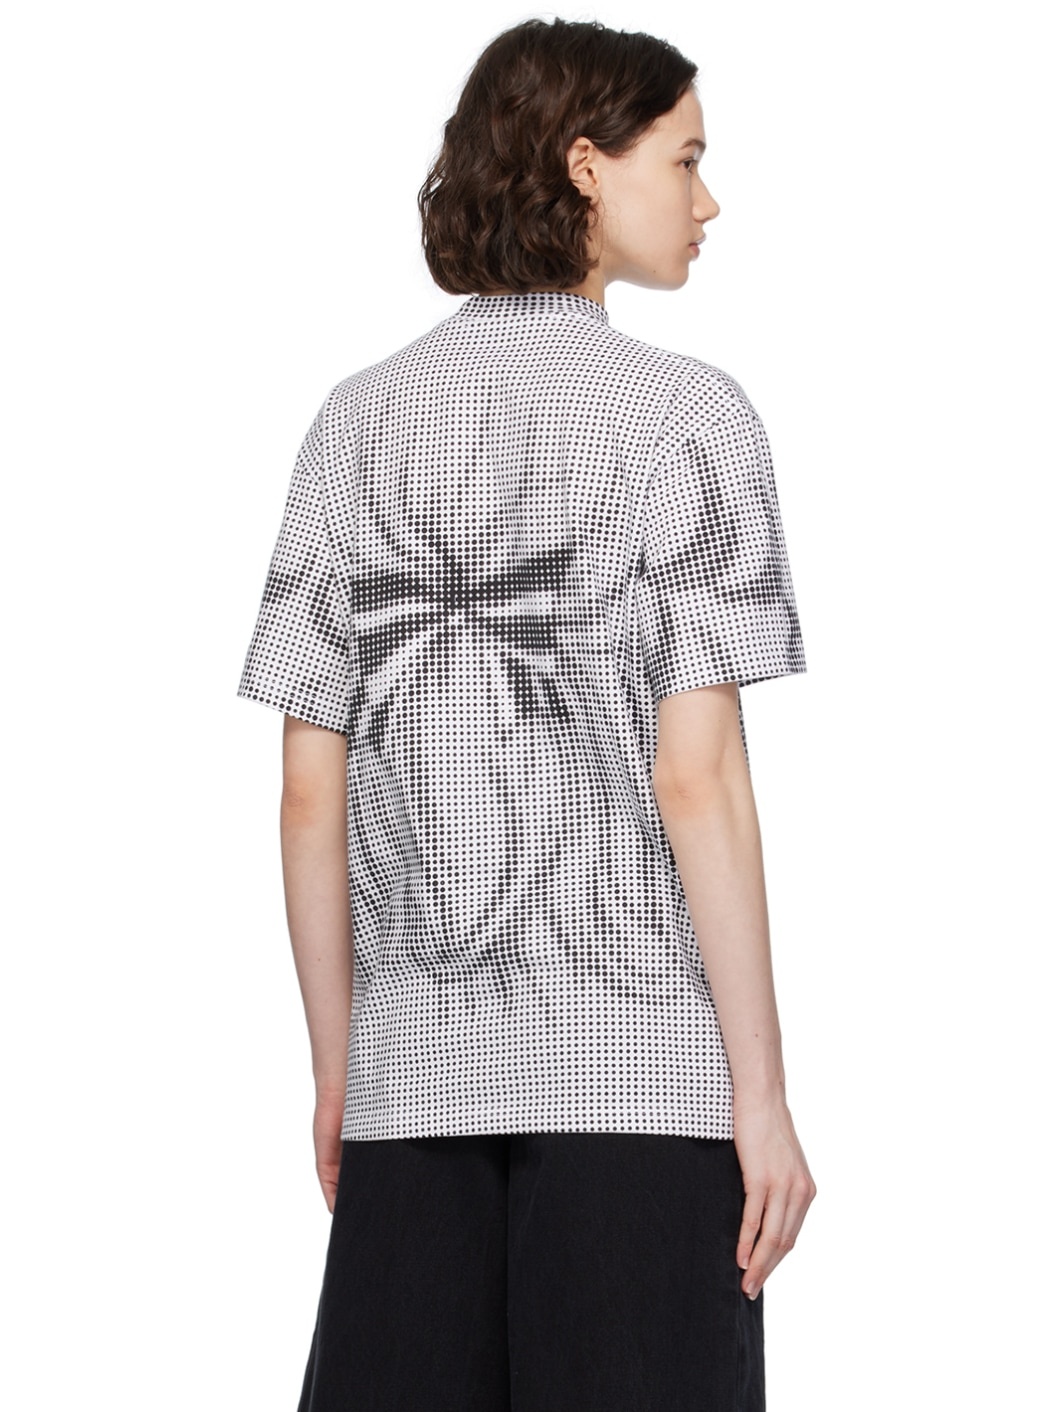 Black & White Pixel Crying Girl T-Shirt - 3